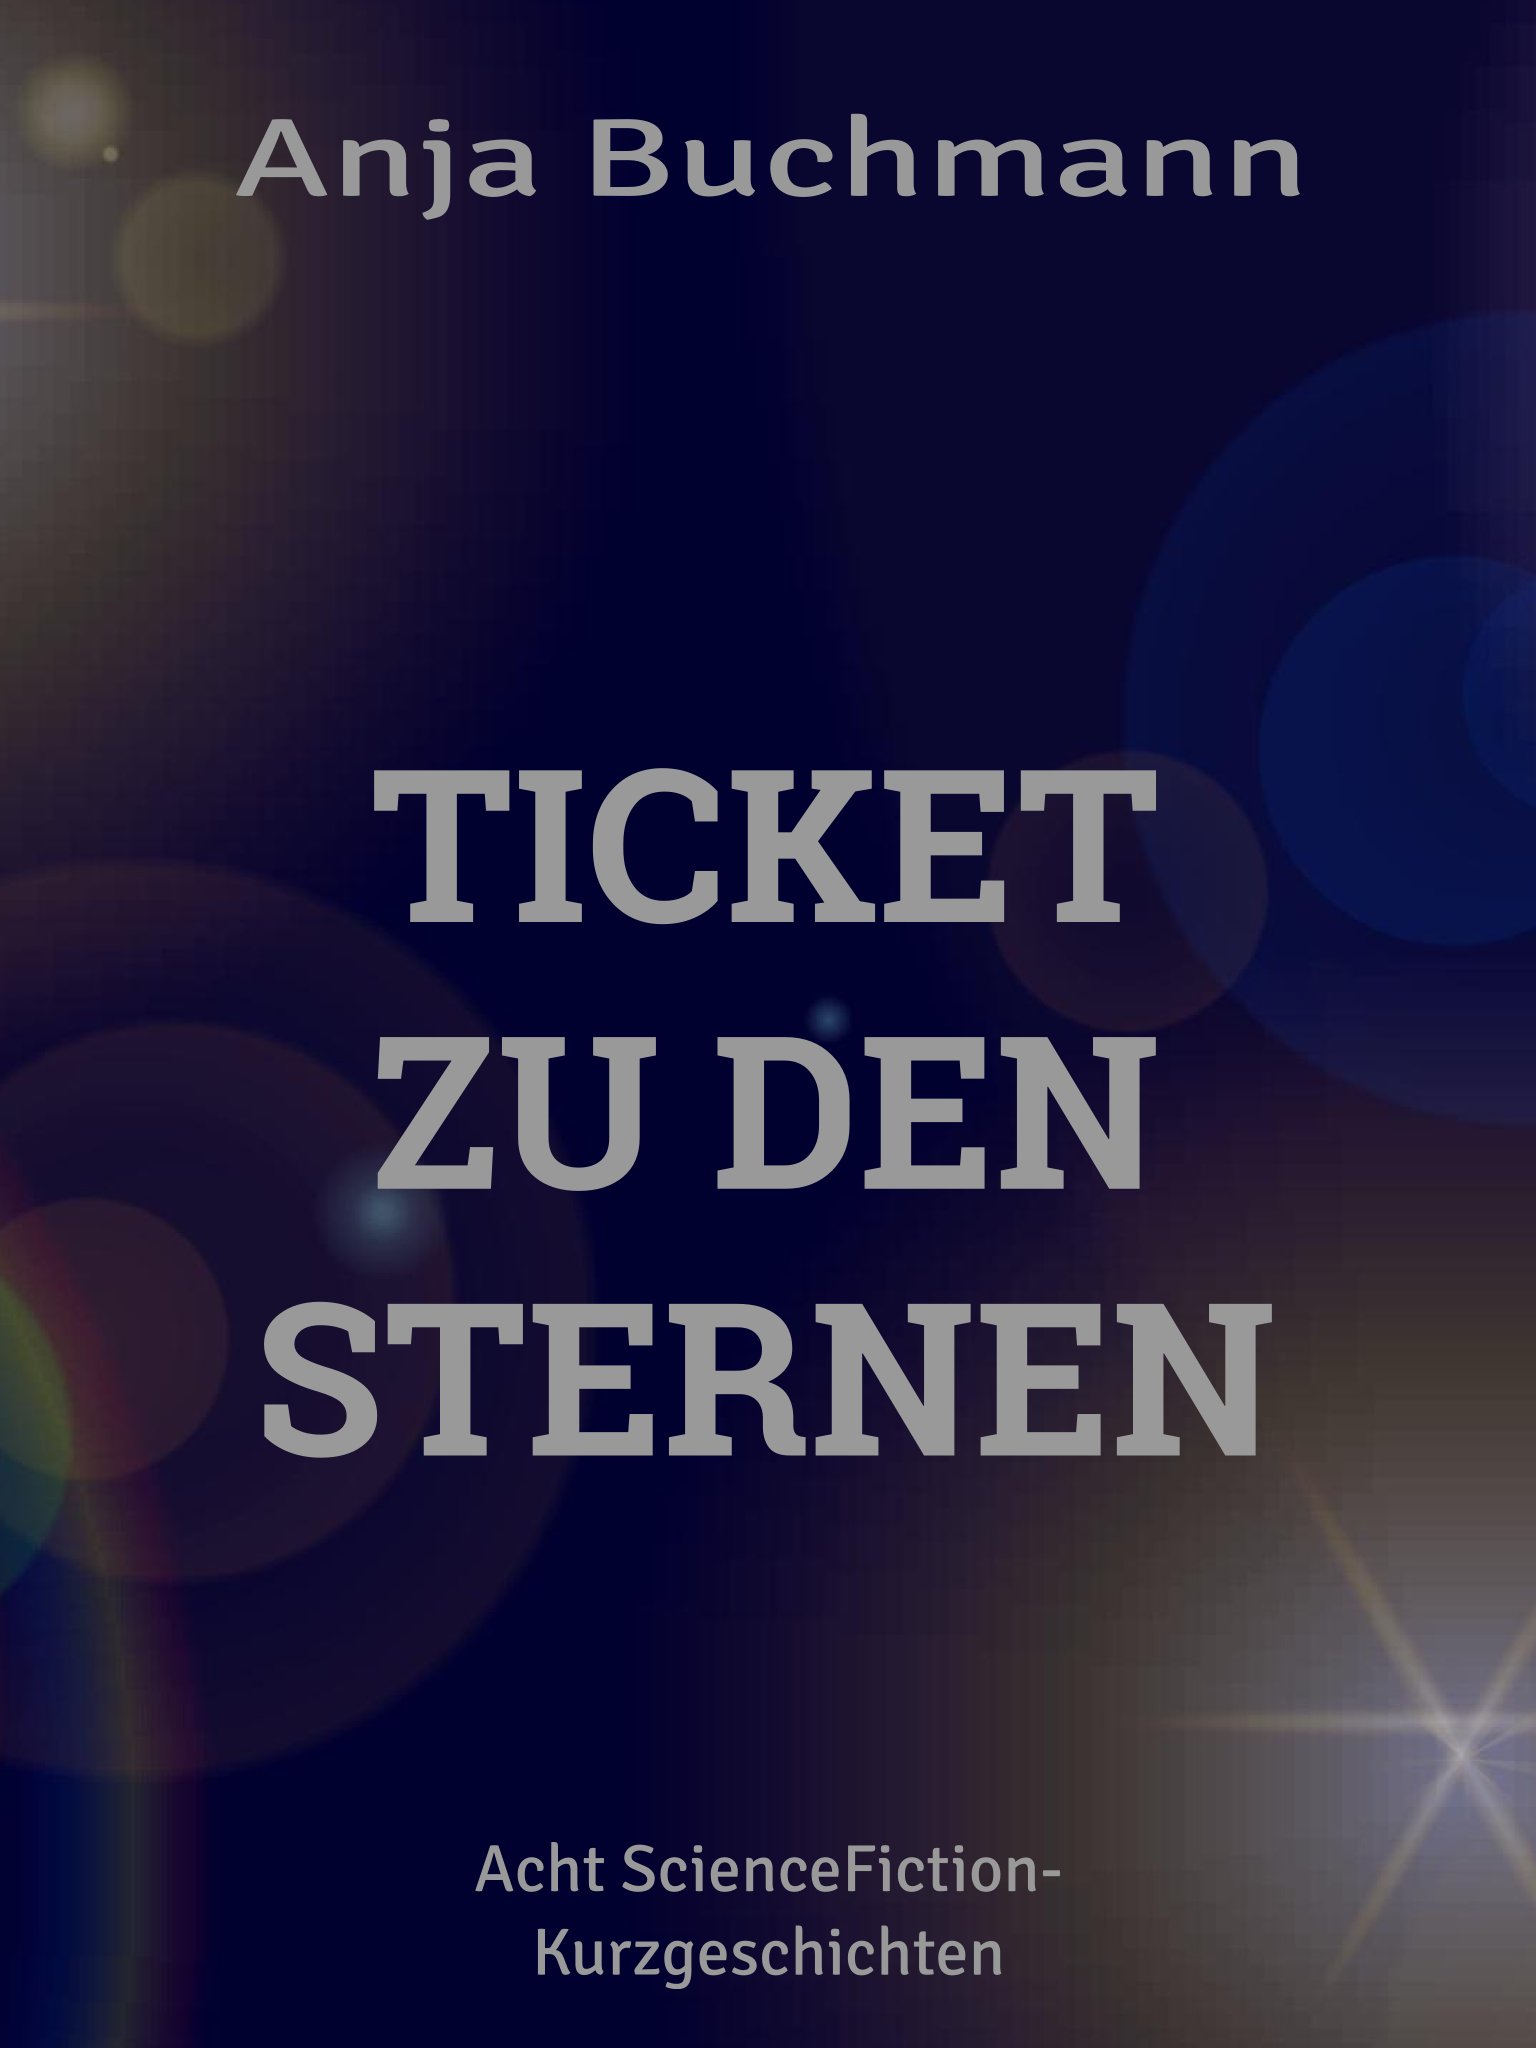 Ticket zu den Sternen, Genre: Since Fiction, Geschichten, SciFi-Kurzgeschichten, Cover